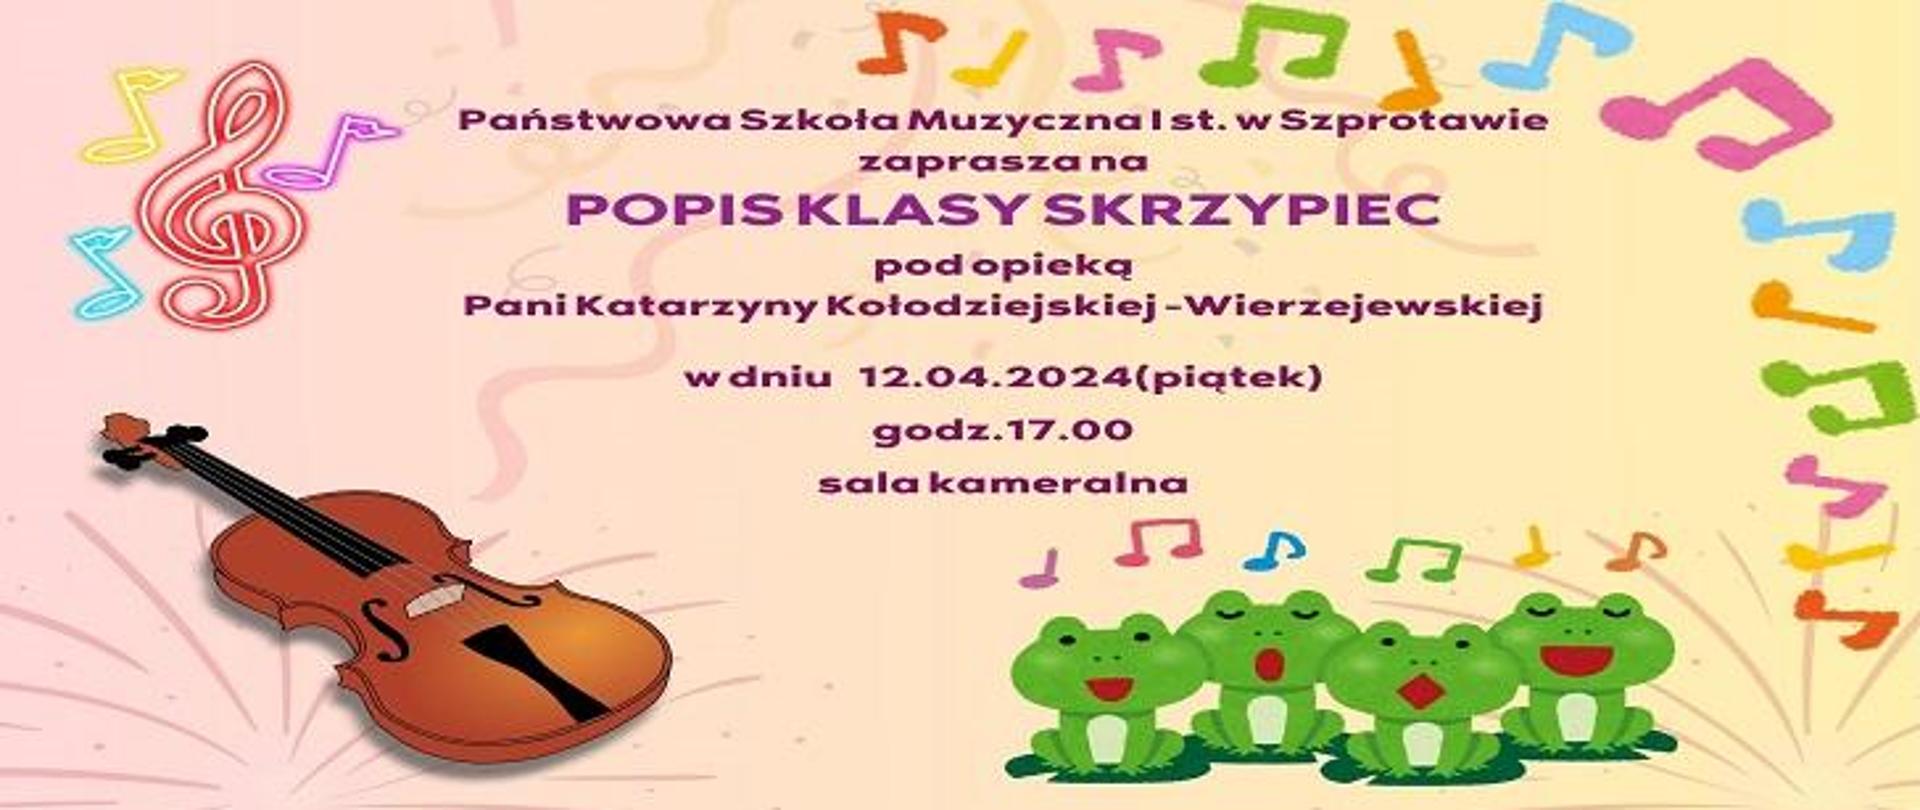 Państwowa Szkoła Muzyczna I st. w Szprotawie zaprasza na POPIS KLASY SKRZYPIEC pod opieką Pani Katarzyny Kołodziejskiej -Wierzejewskiej w dniu 12.04.2024 (piątek) godz. 17.00 sala kameralna.